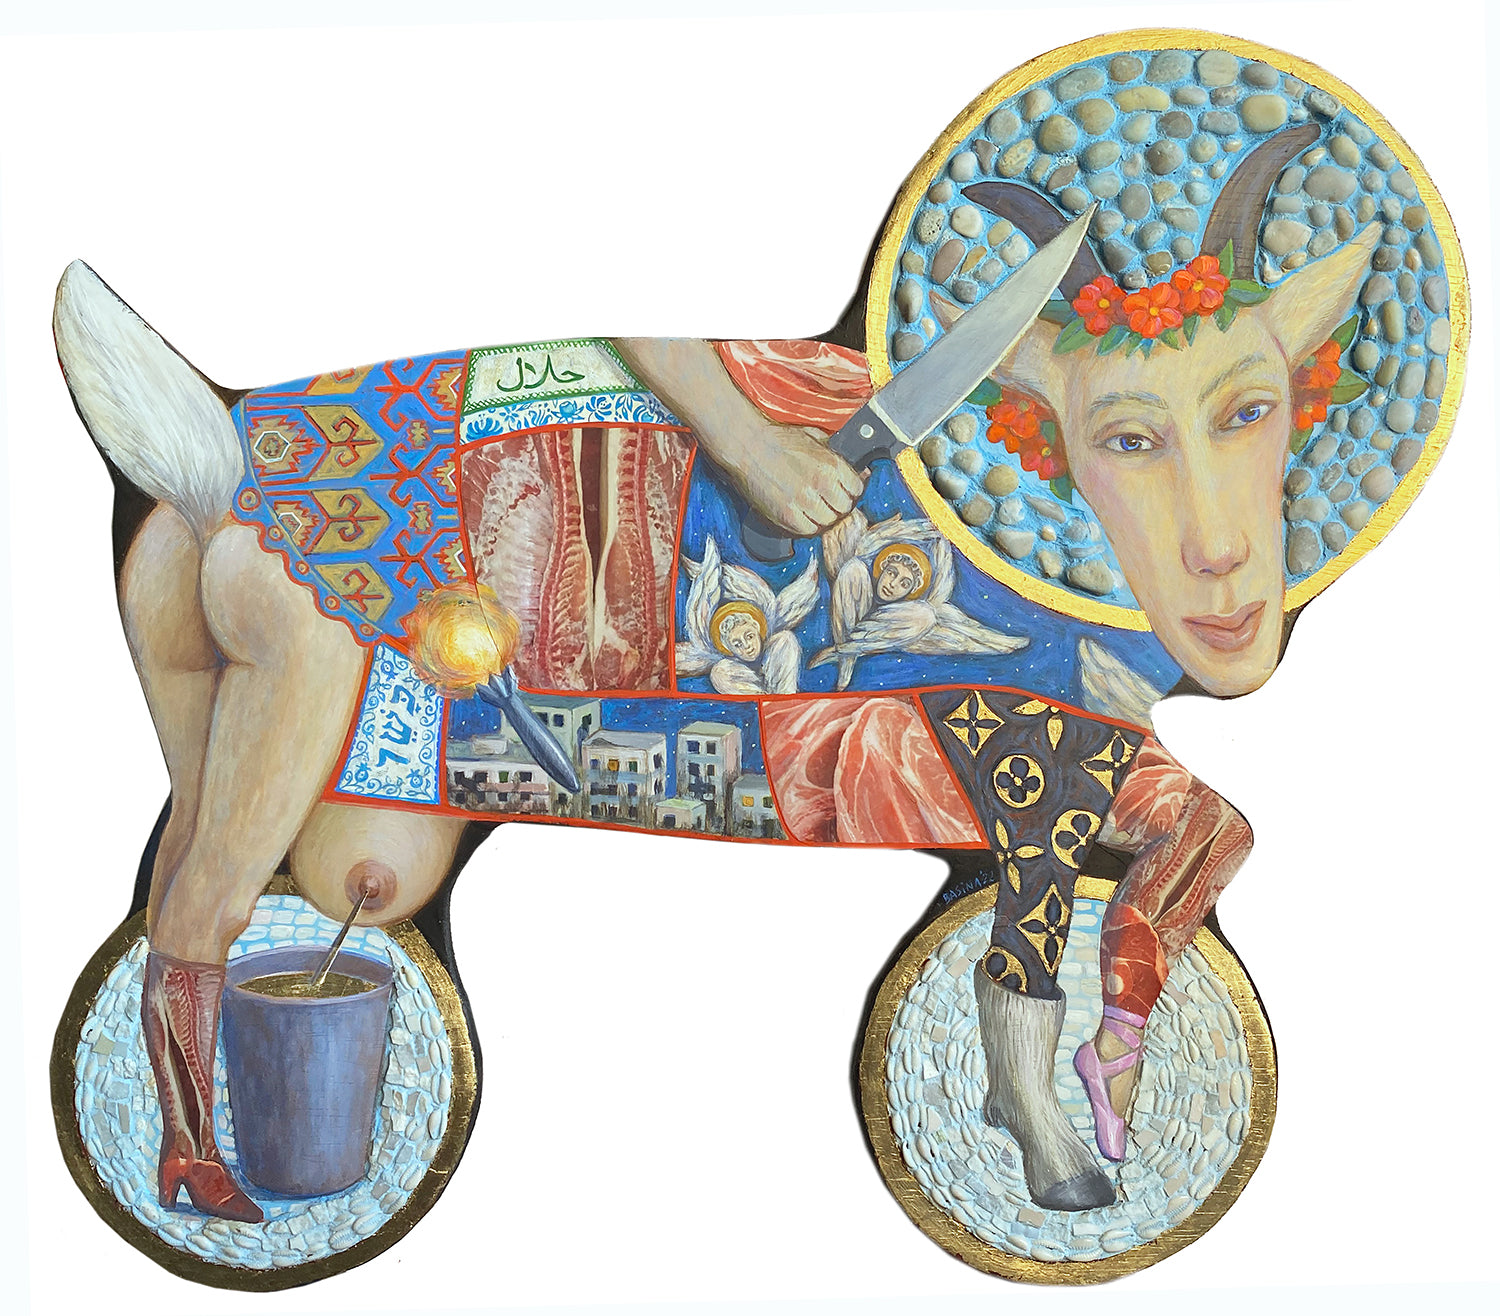 Viktoriya Basina, "Folk Toys: The Goat"